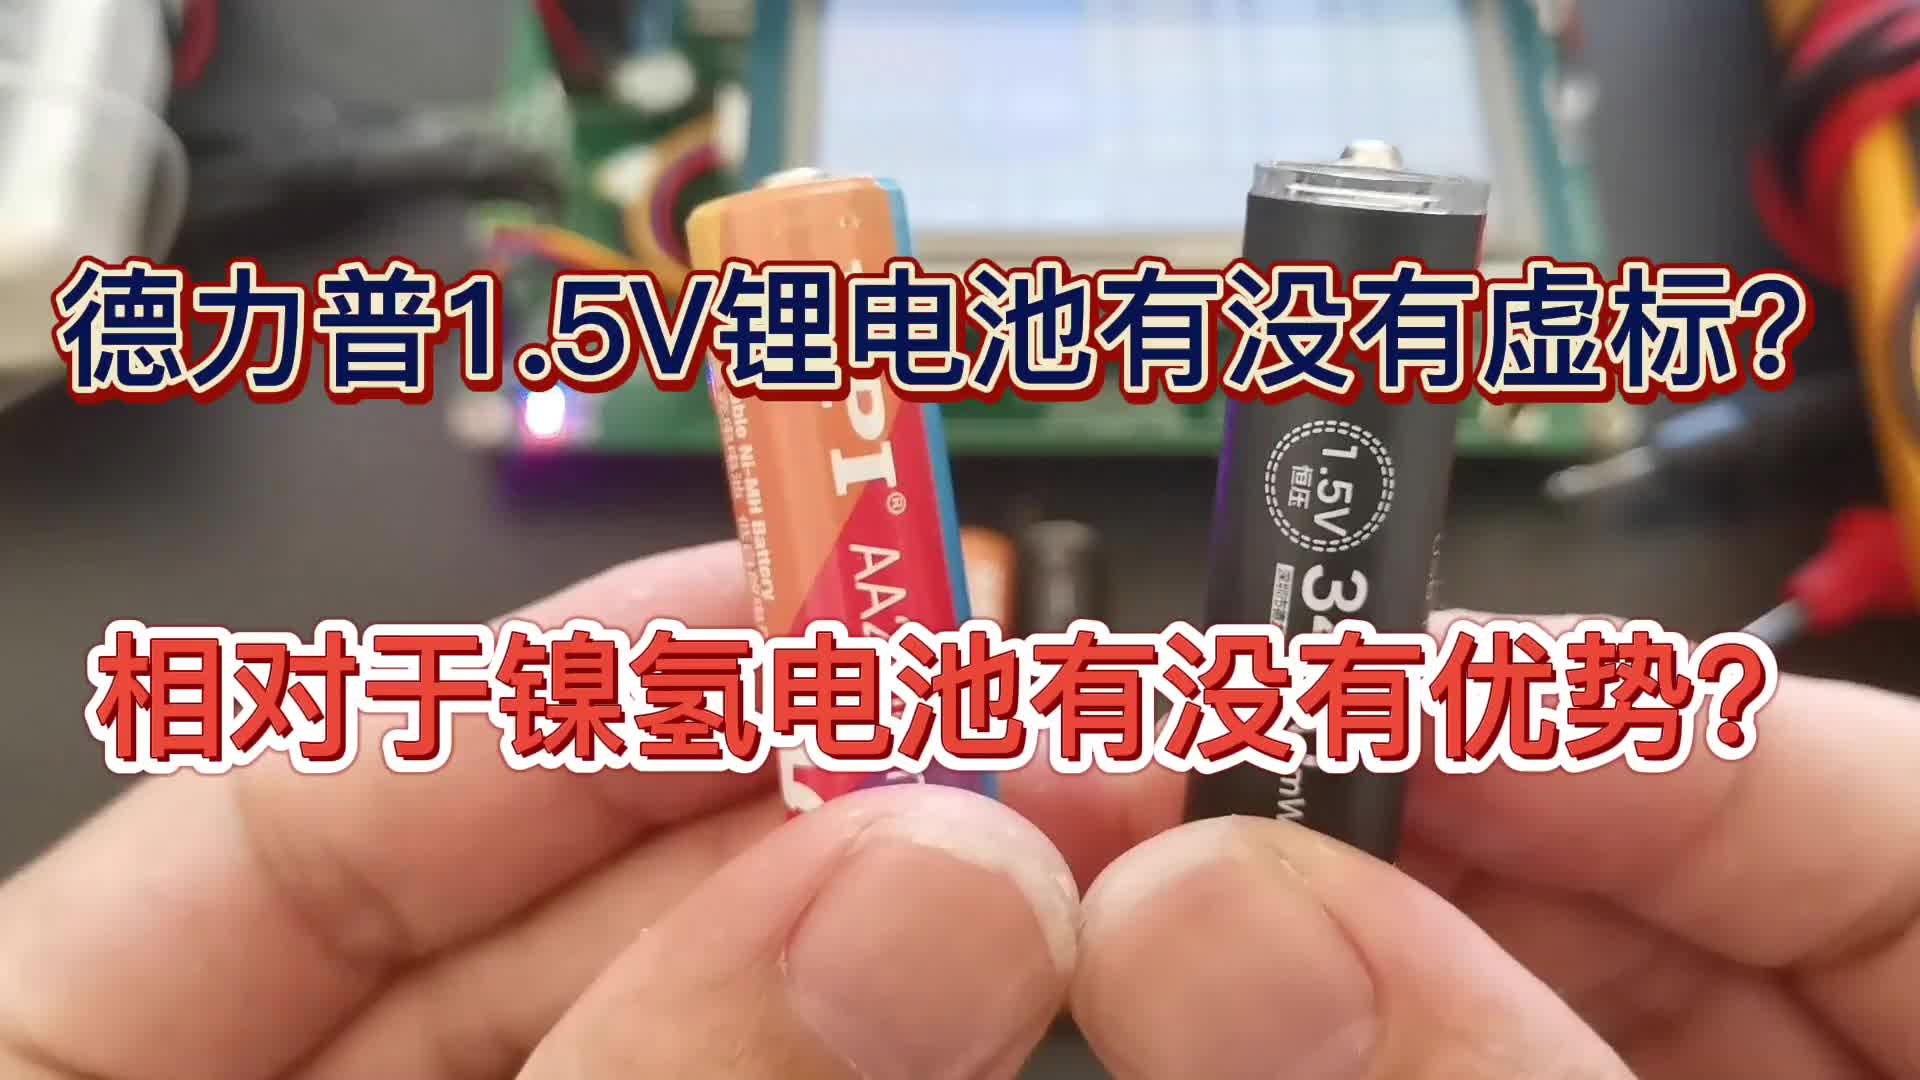 00025 德力普1.5V锂电池有没有虚标？相对于镍氢电池有没有优势？ #德力普 #倍特力 #锂电池 